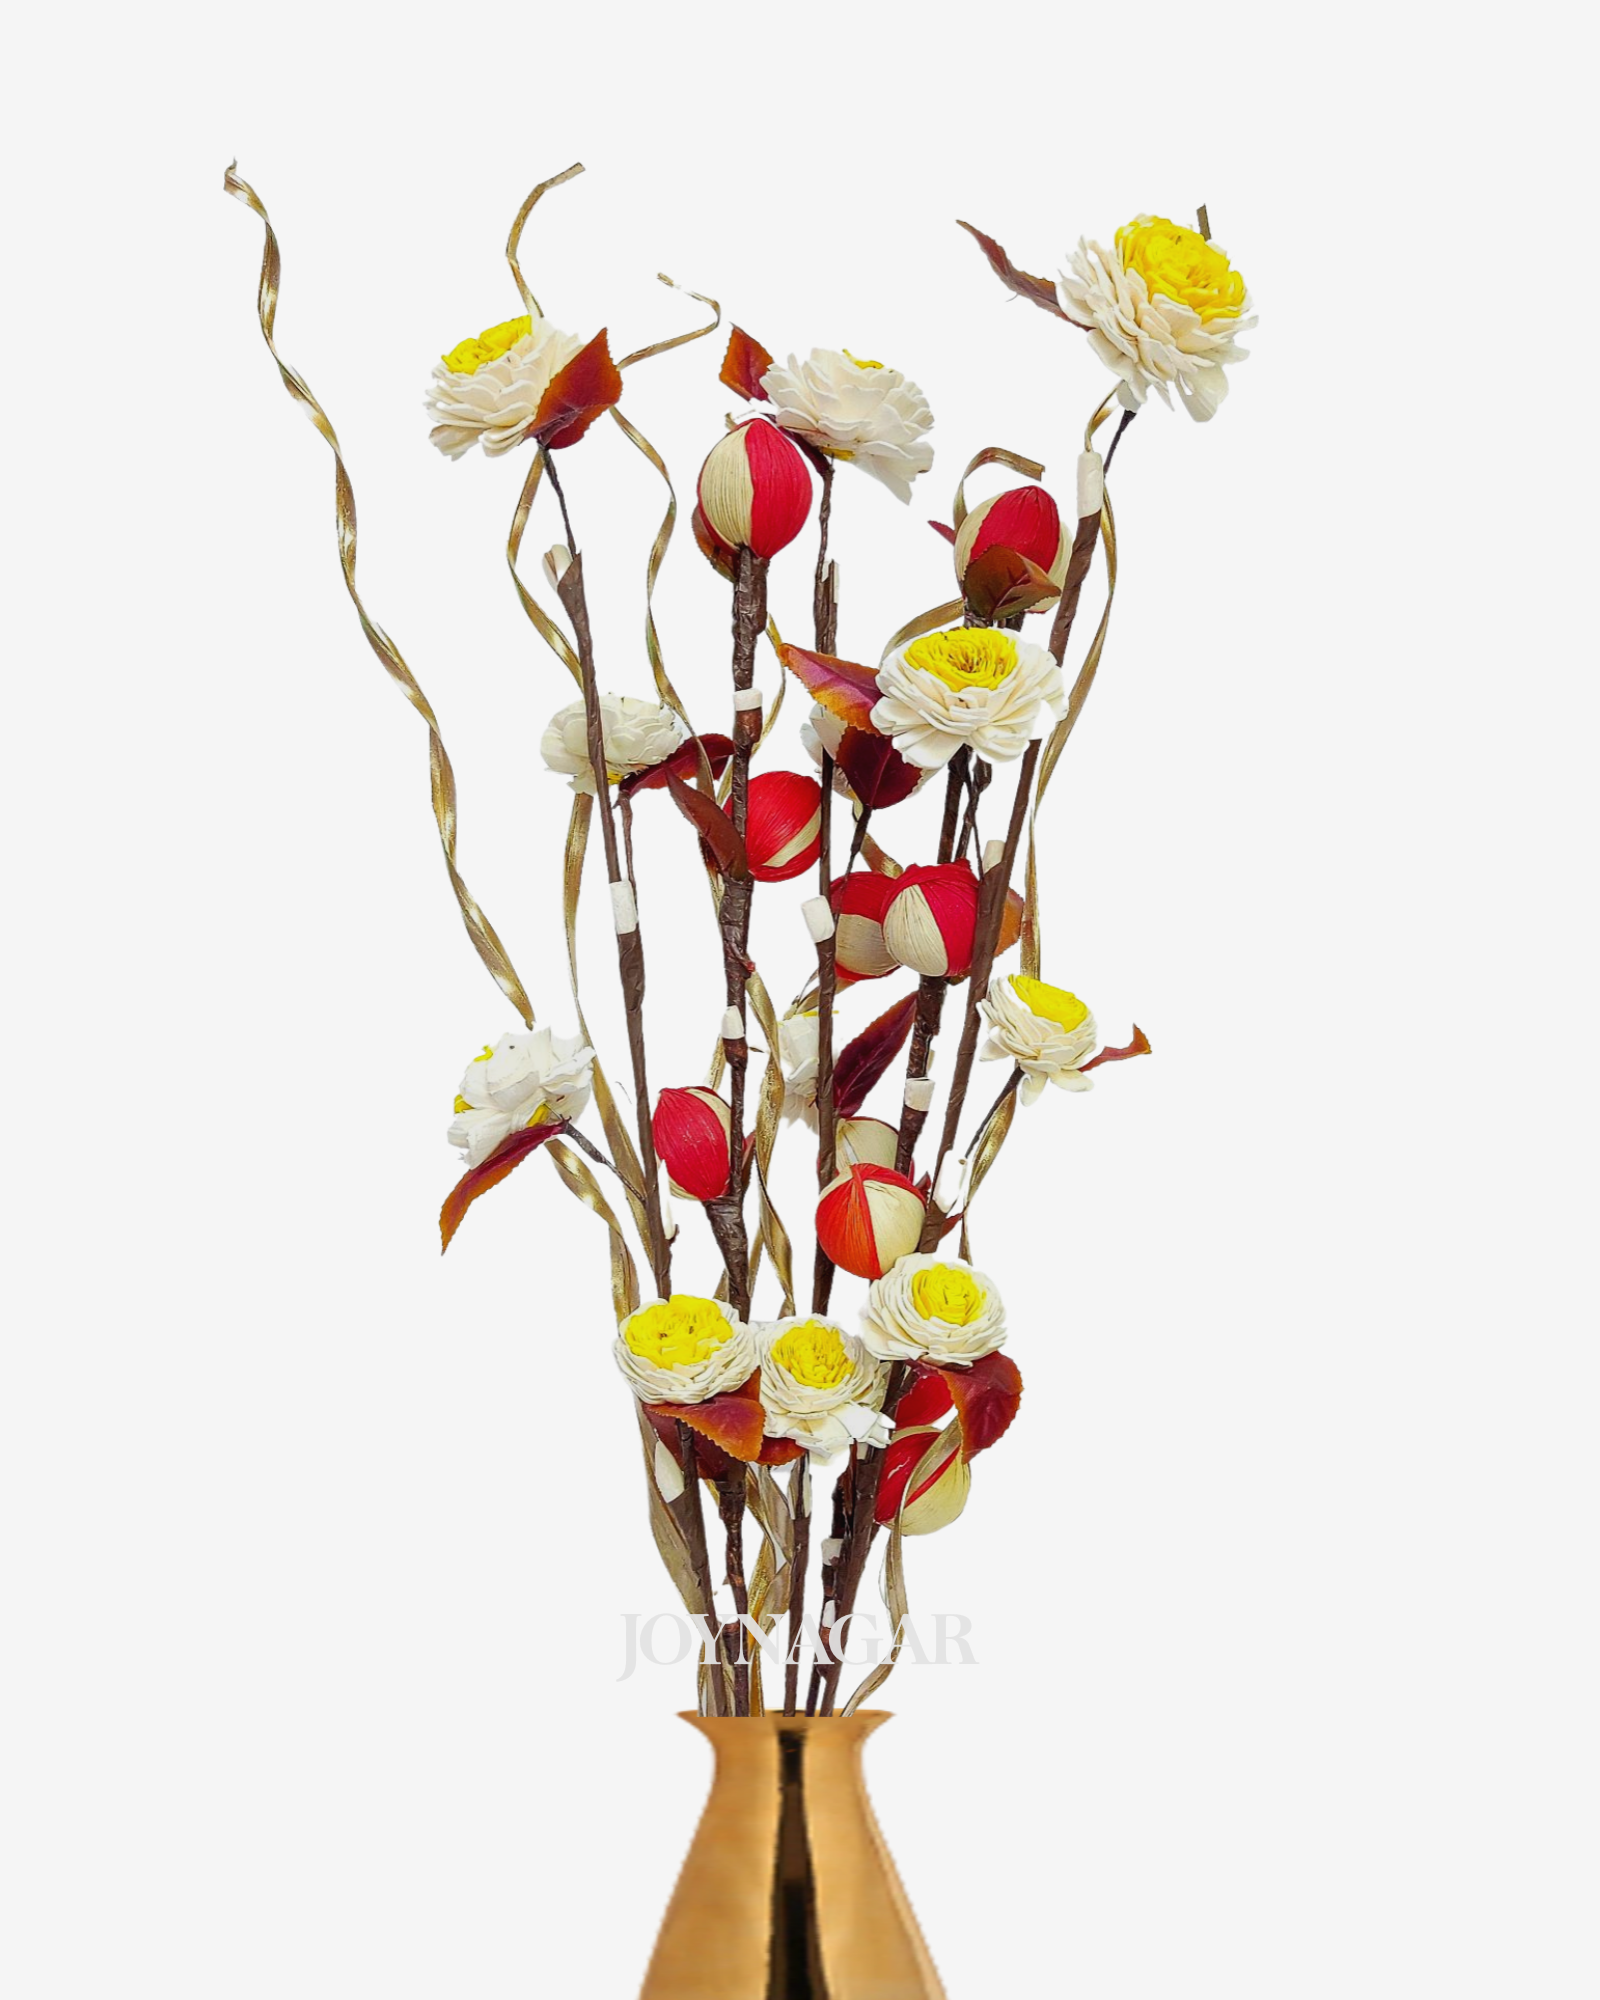 Sola Corn Ball Belli Mix Flower Bunch Joynagar Handicraft Artificial Flowers color_random